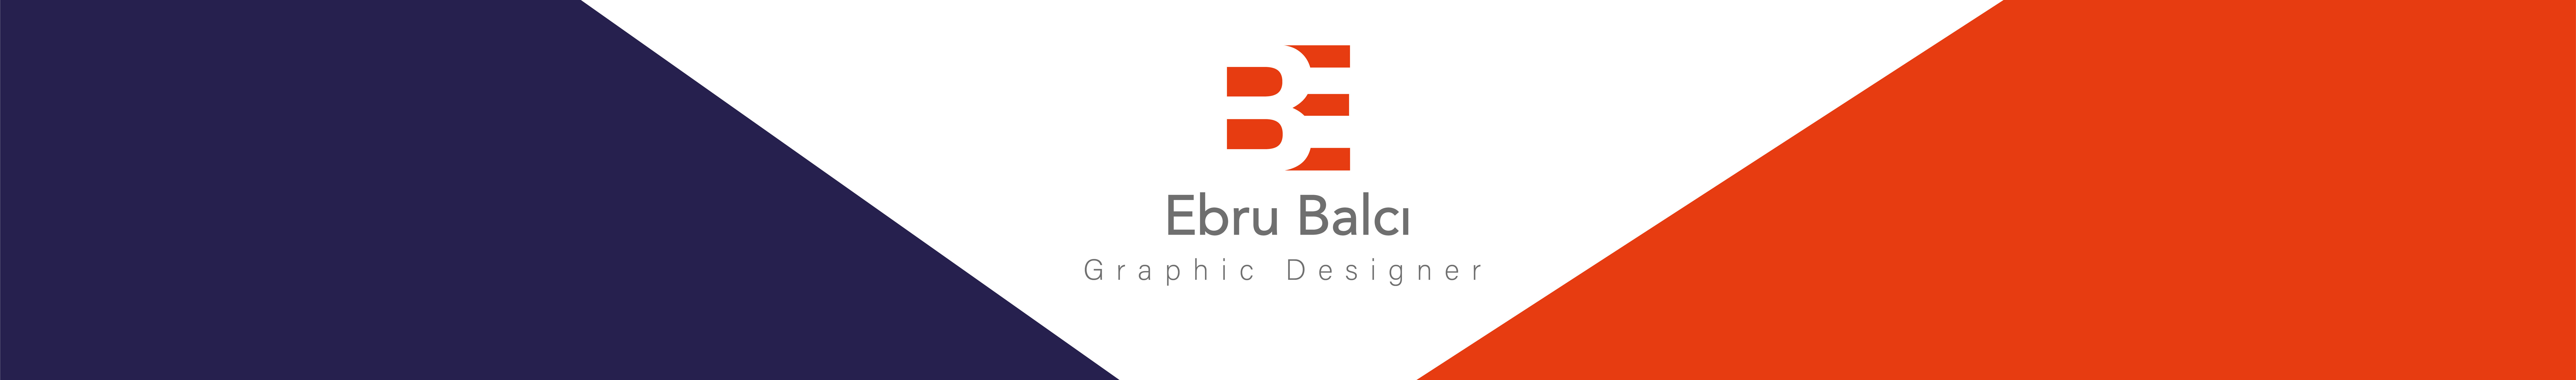 Ebru Balci's profile banner